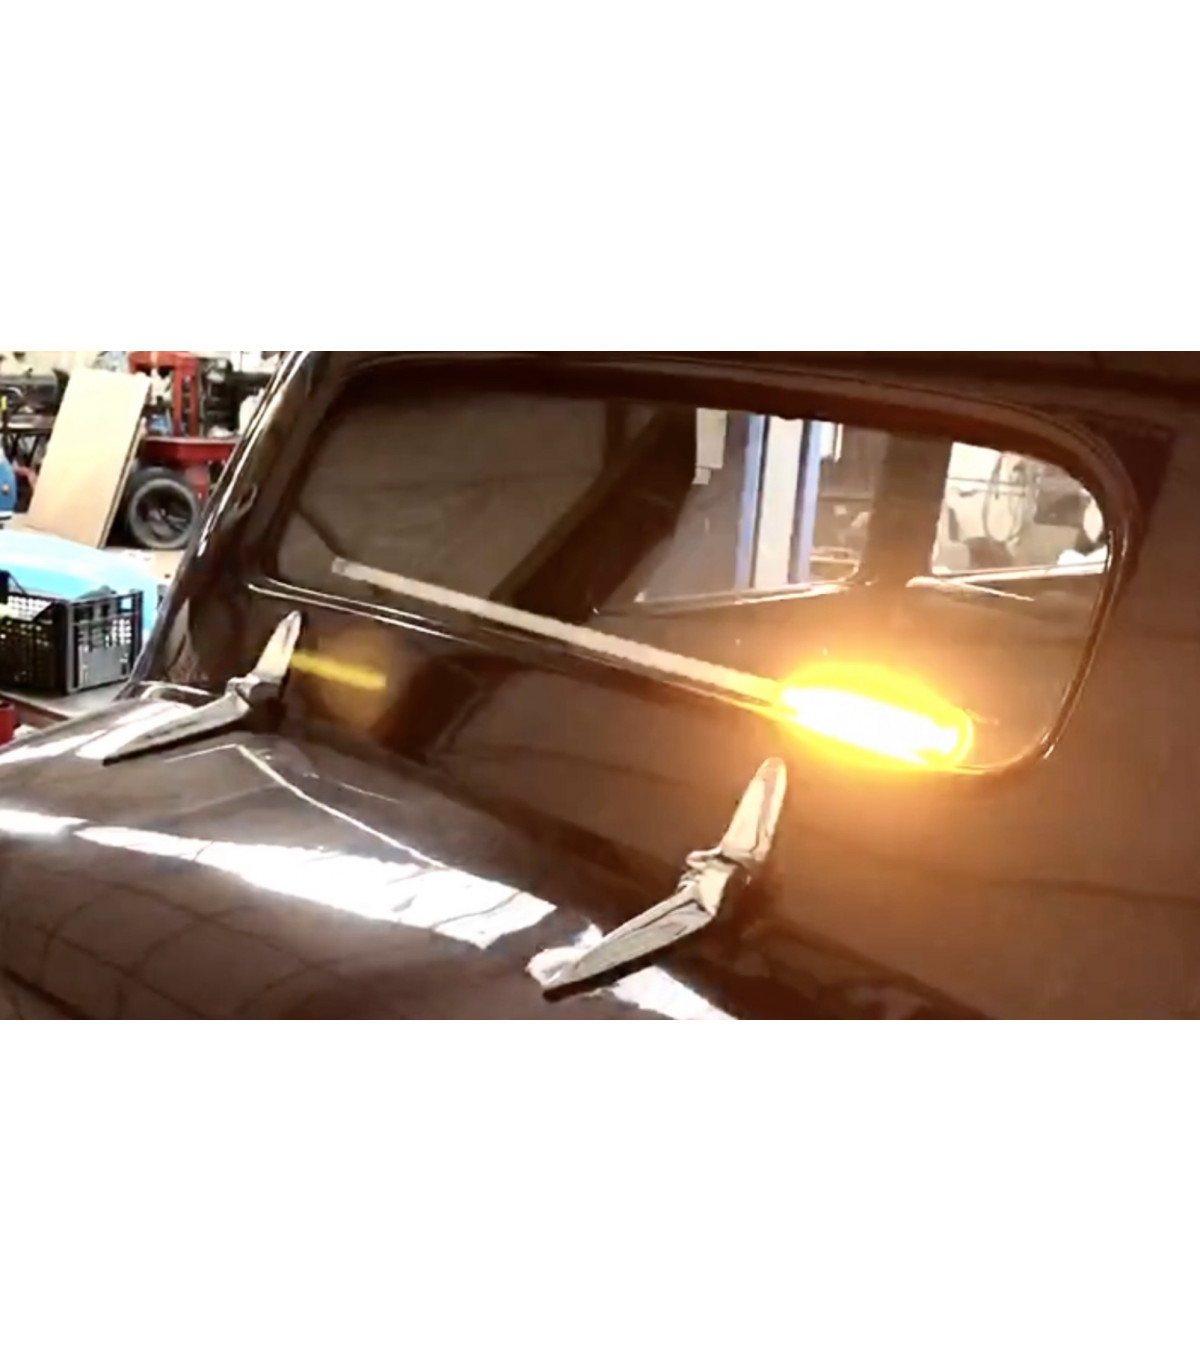 Barre lumineuse LED clignotante magnétique pour voiture, feu de